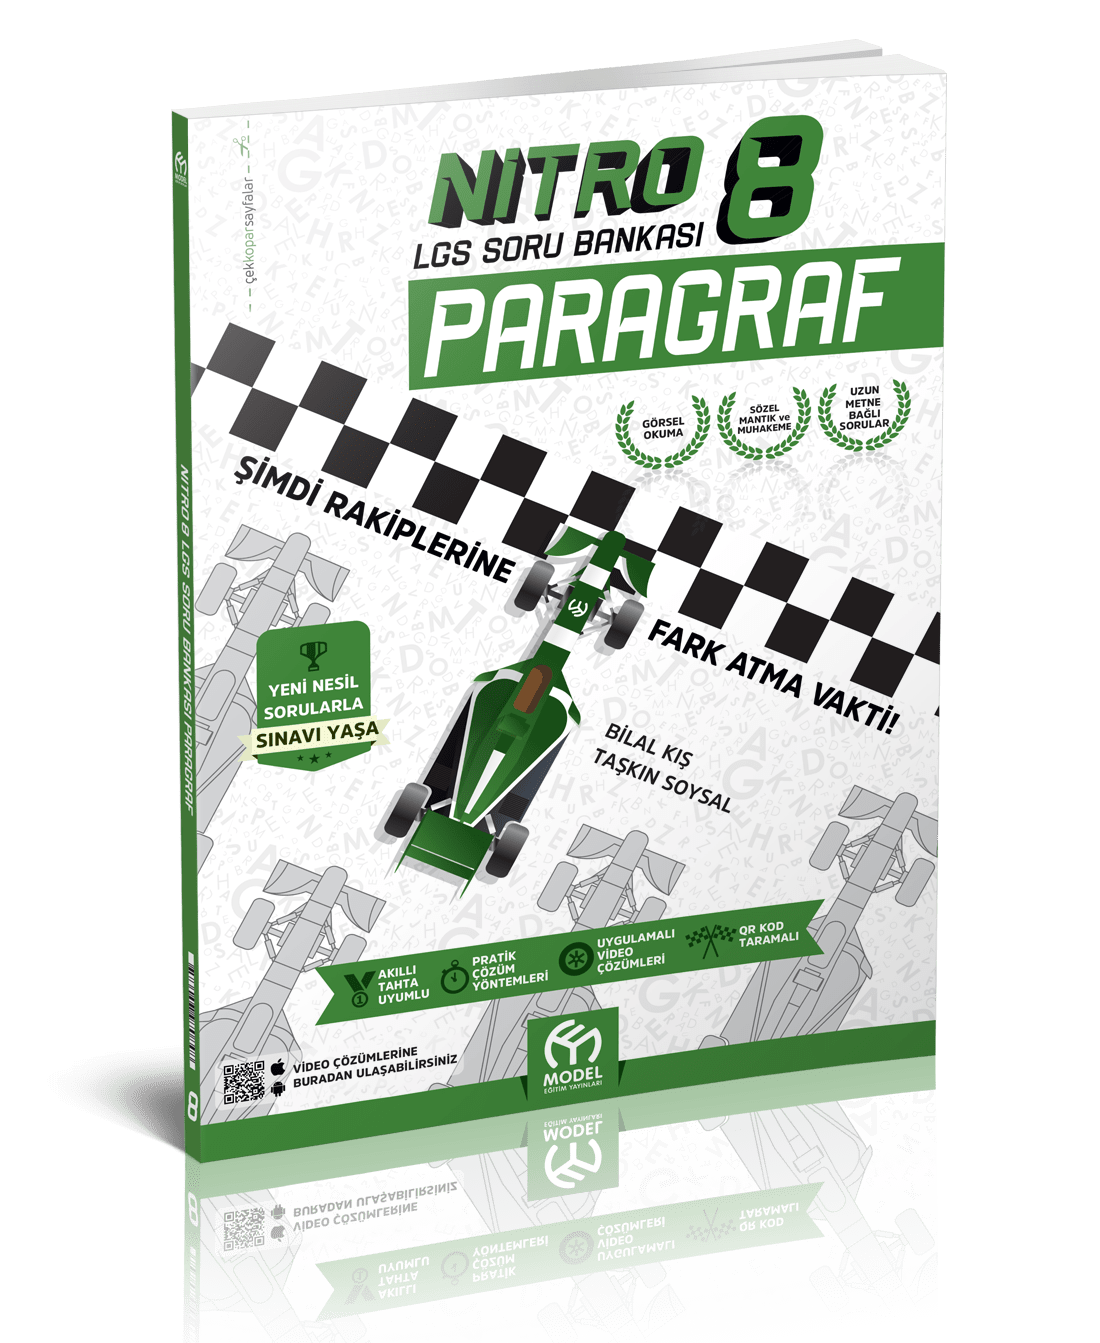 Nitro 8 LGS Soru Bankası PARAGRAF